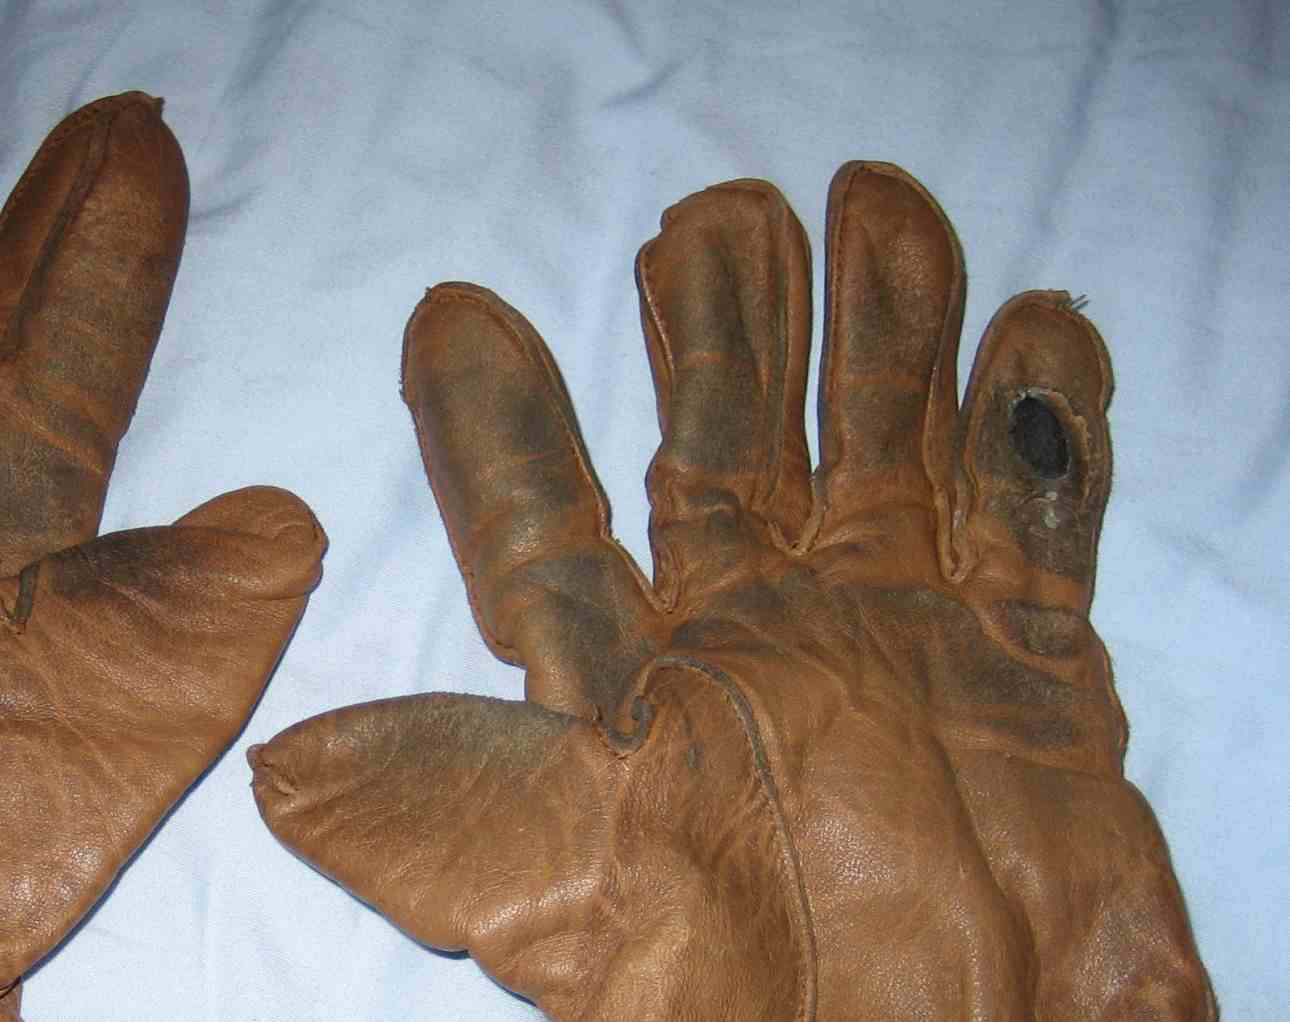 DS64 My worn gloves